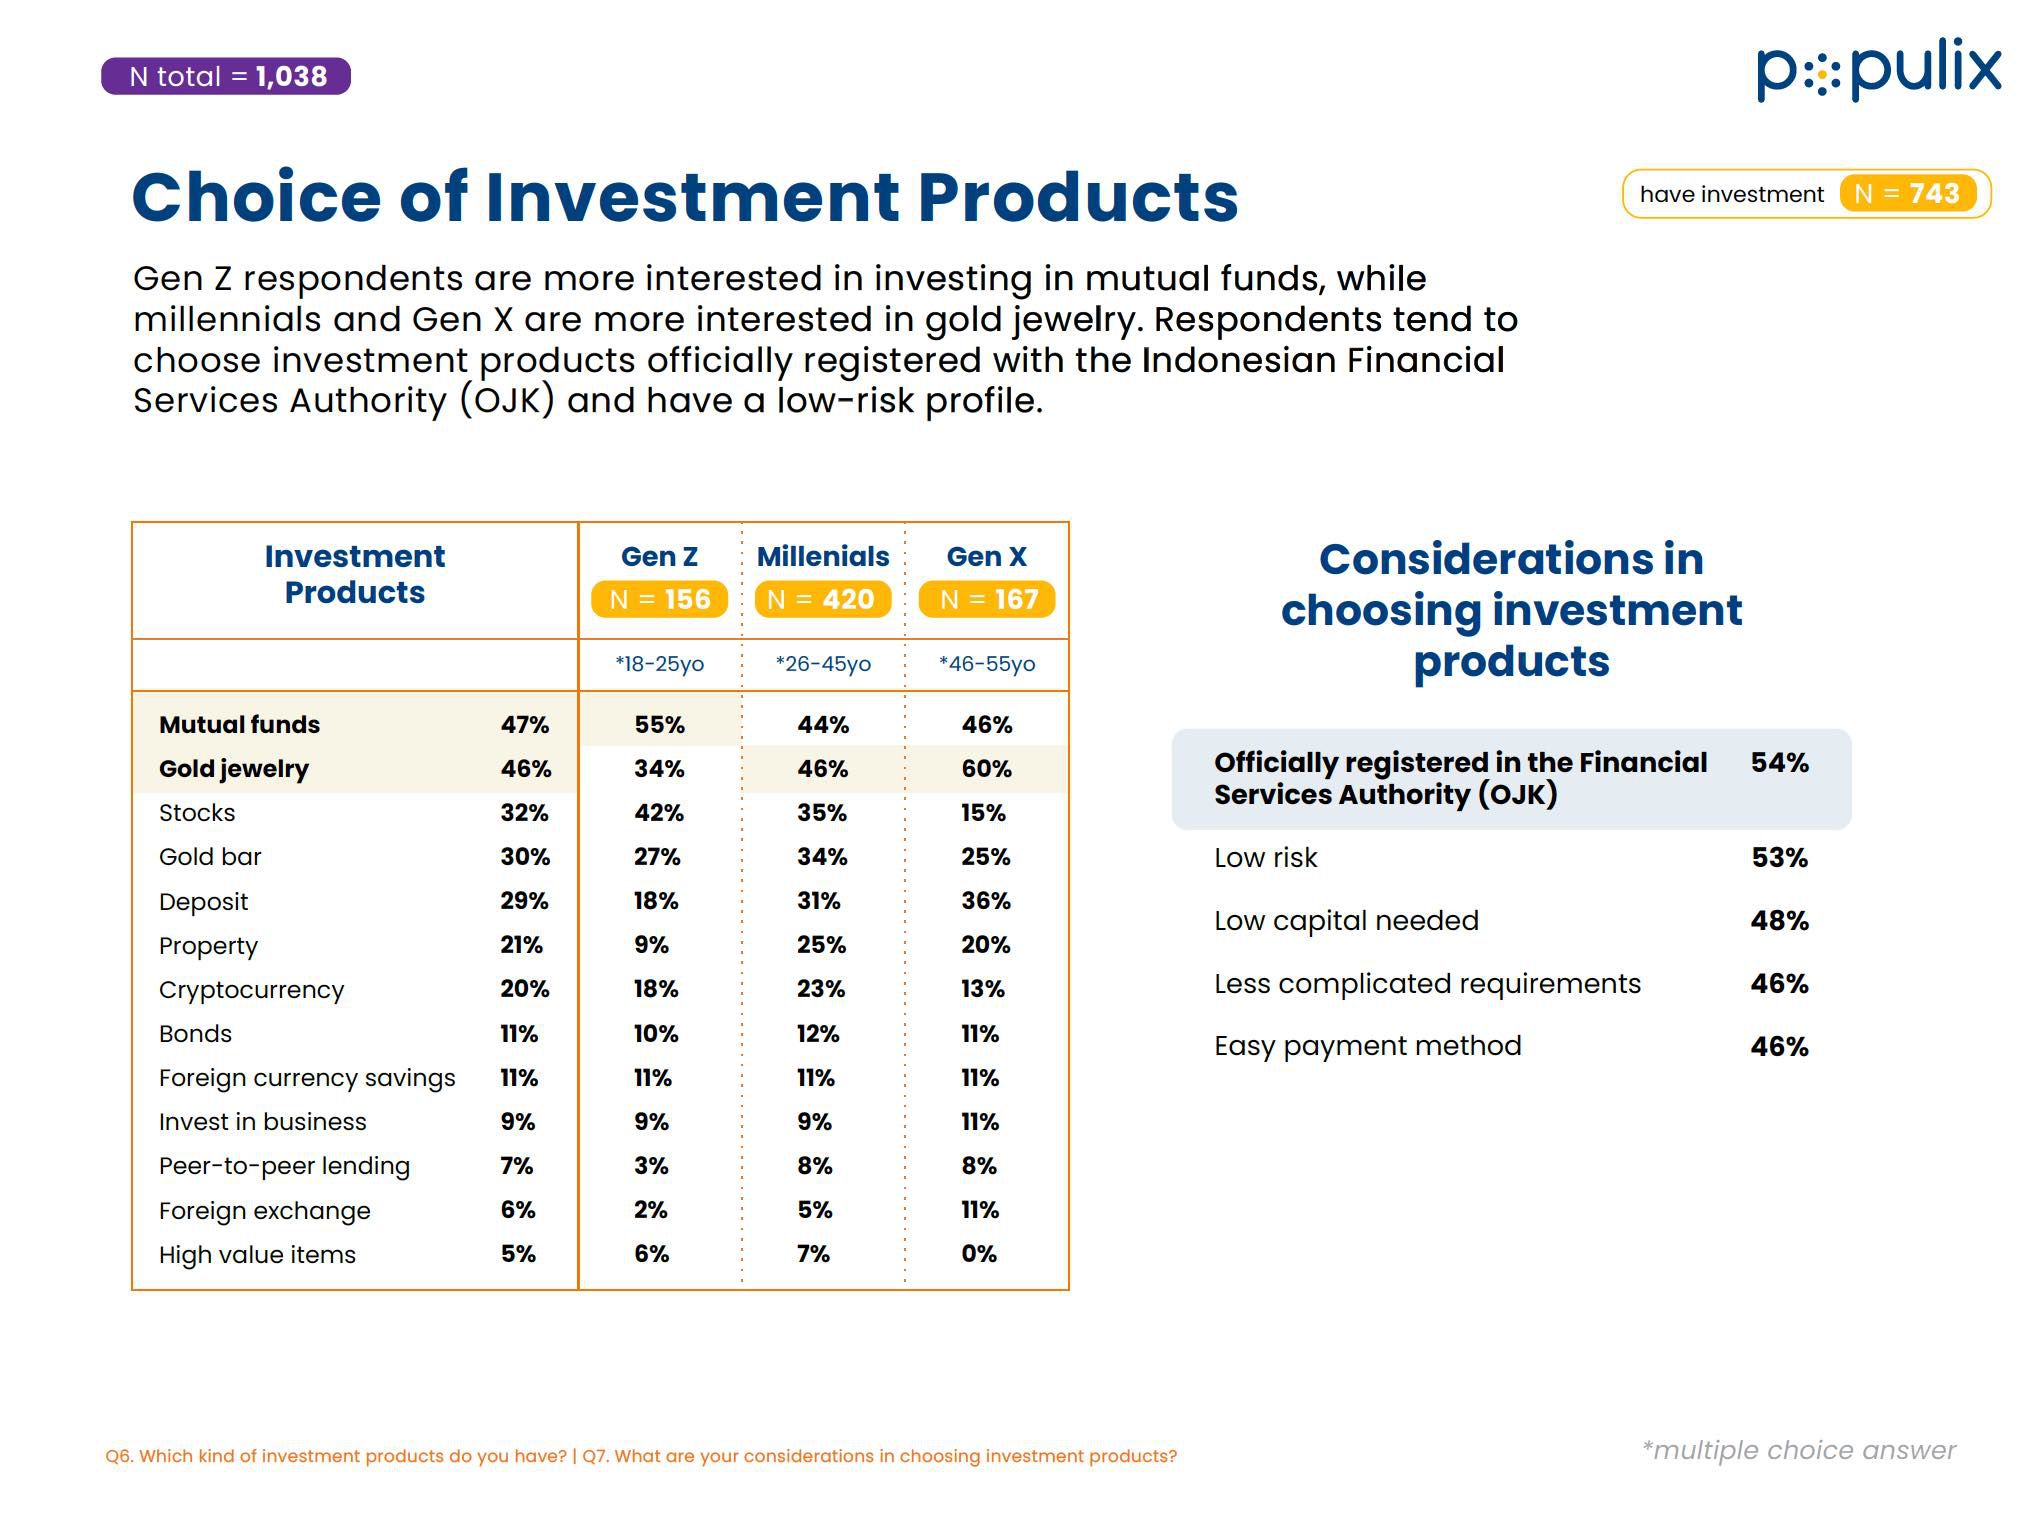 Survei Populix tentang Investasi di Masyarakat